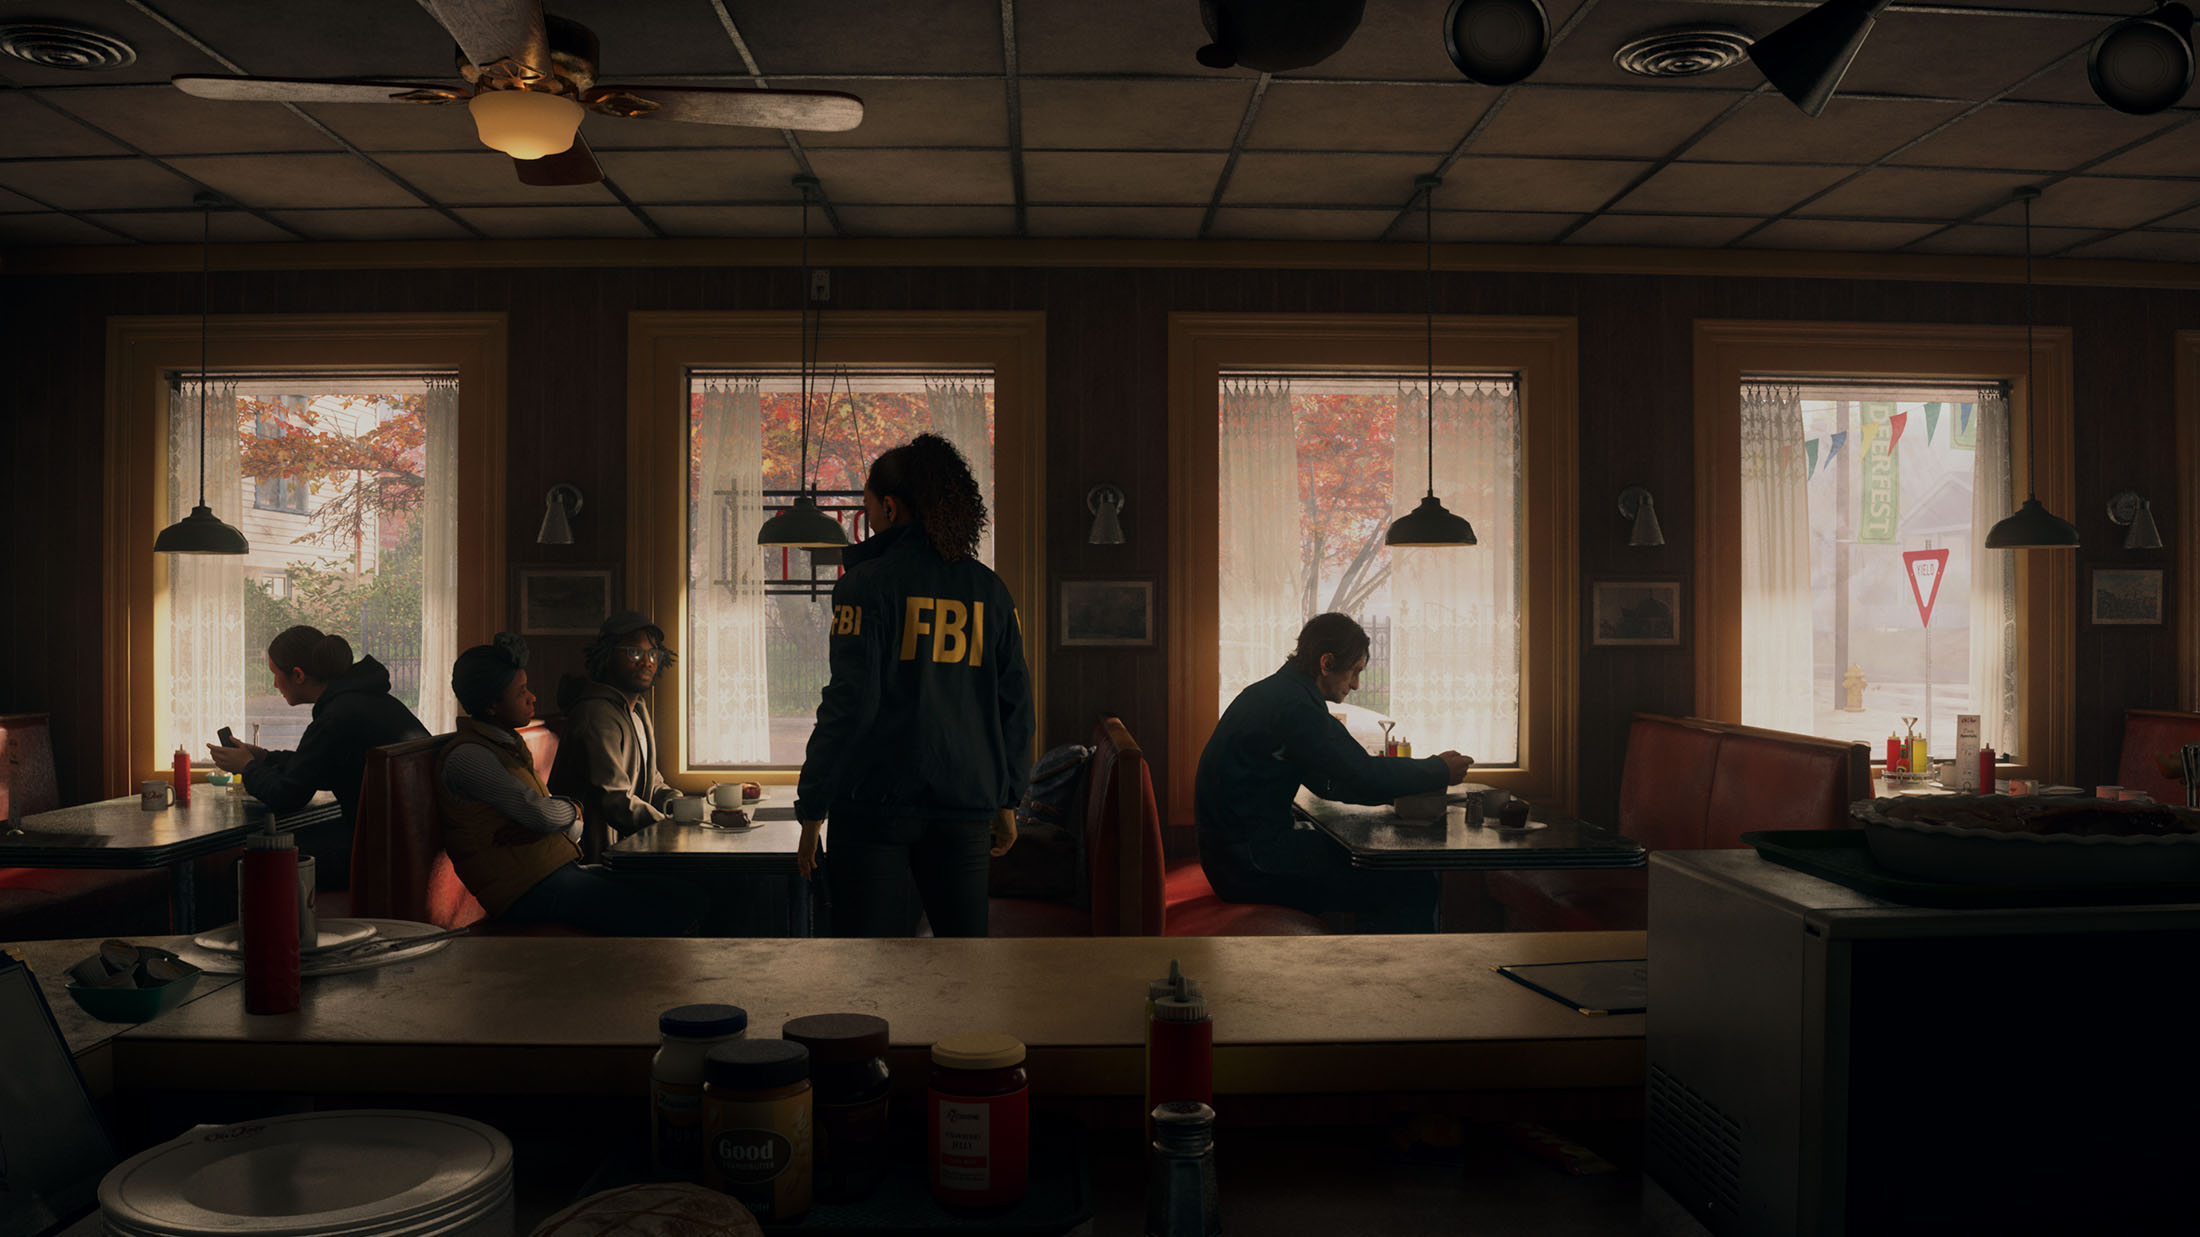 Screenshot aus Alan Wake 2, der das Innere eines Diners zeigt mit einer FBI-Agentin.